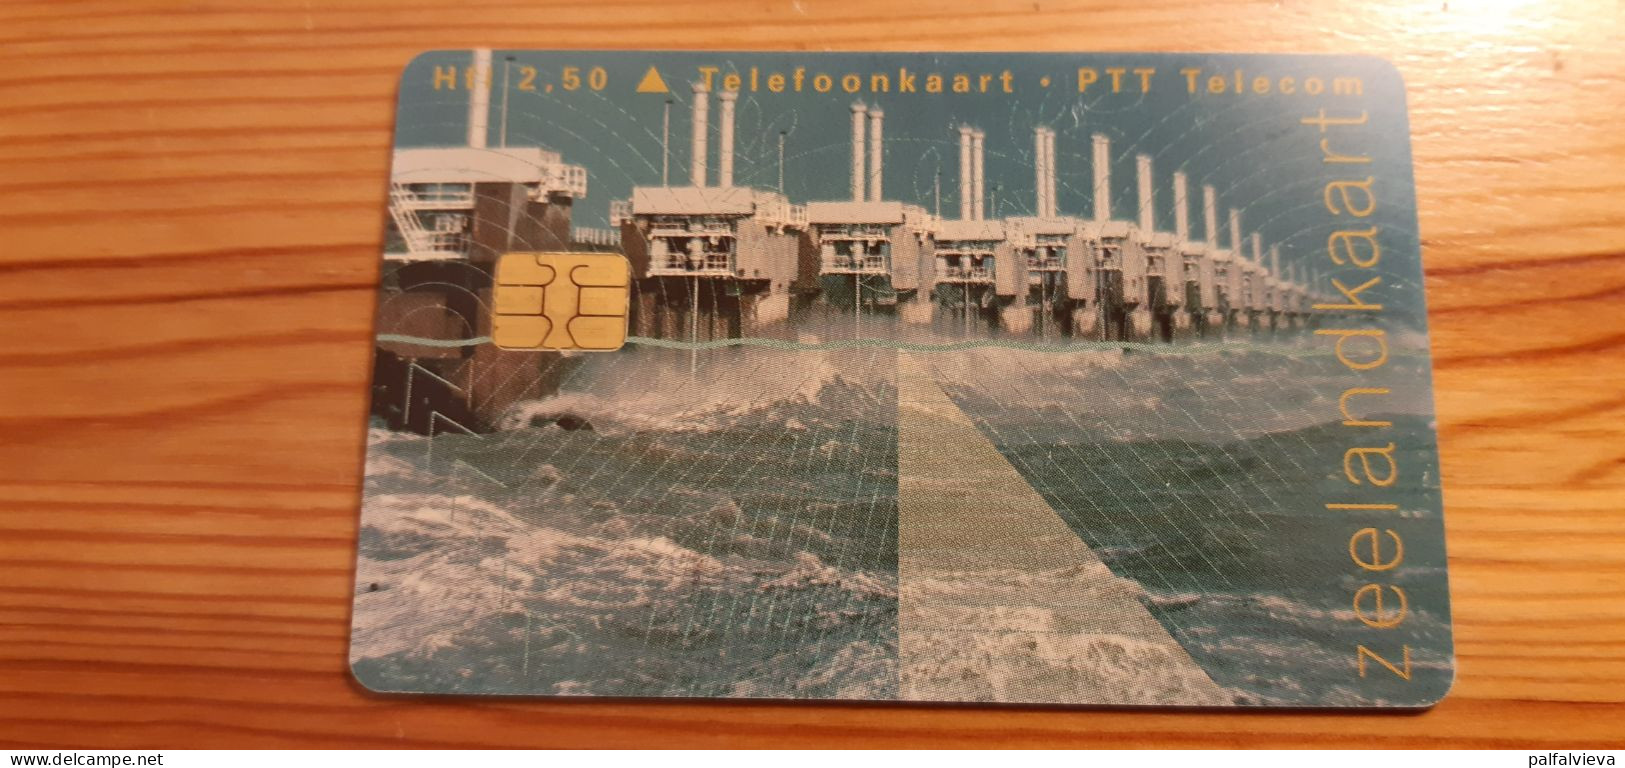 Phonecard Netherlands - Zeelandkaart - Públicas